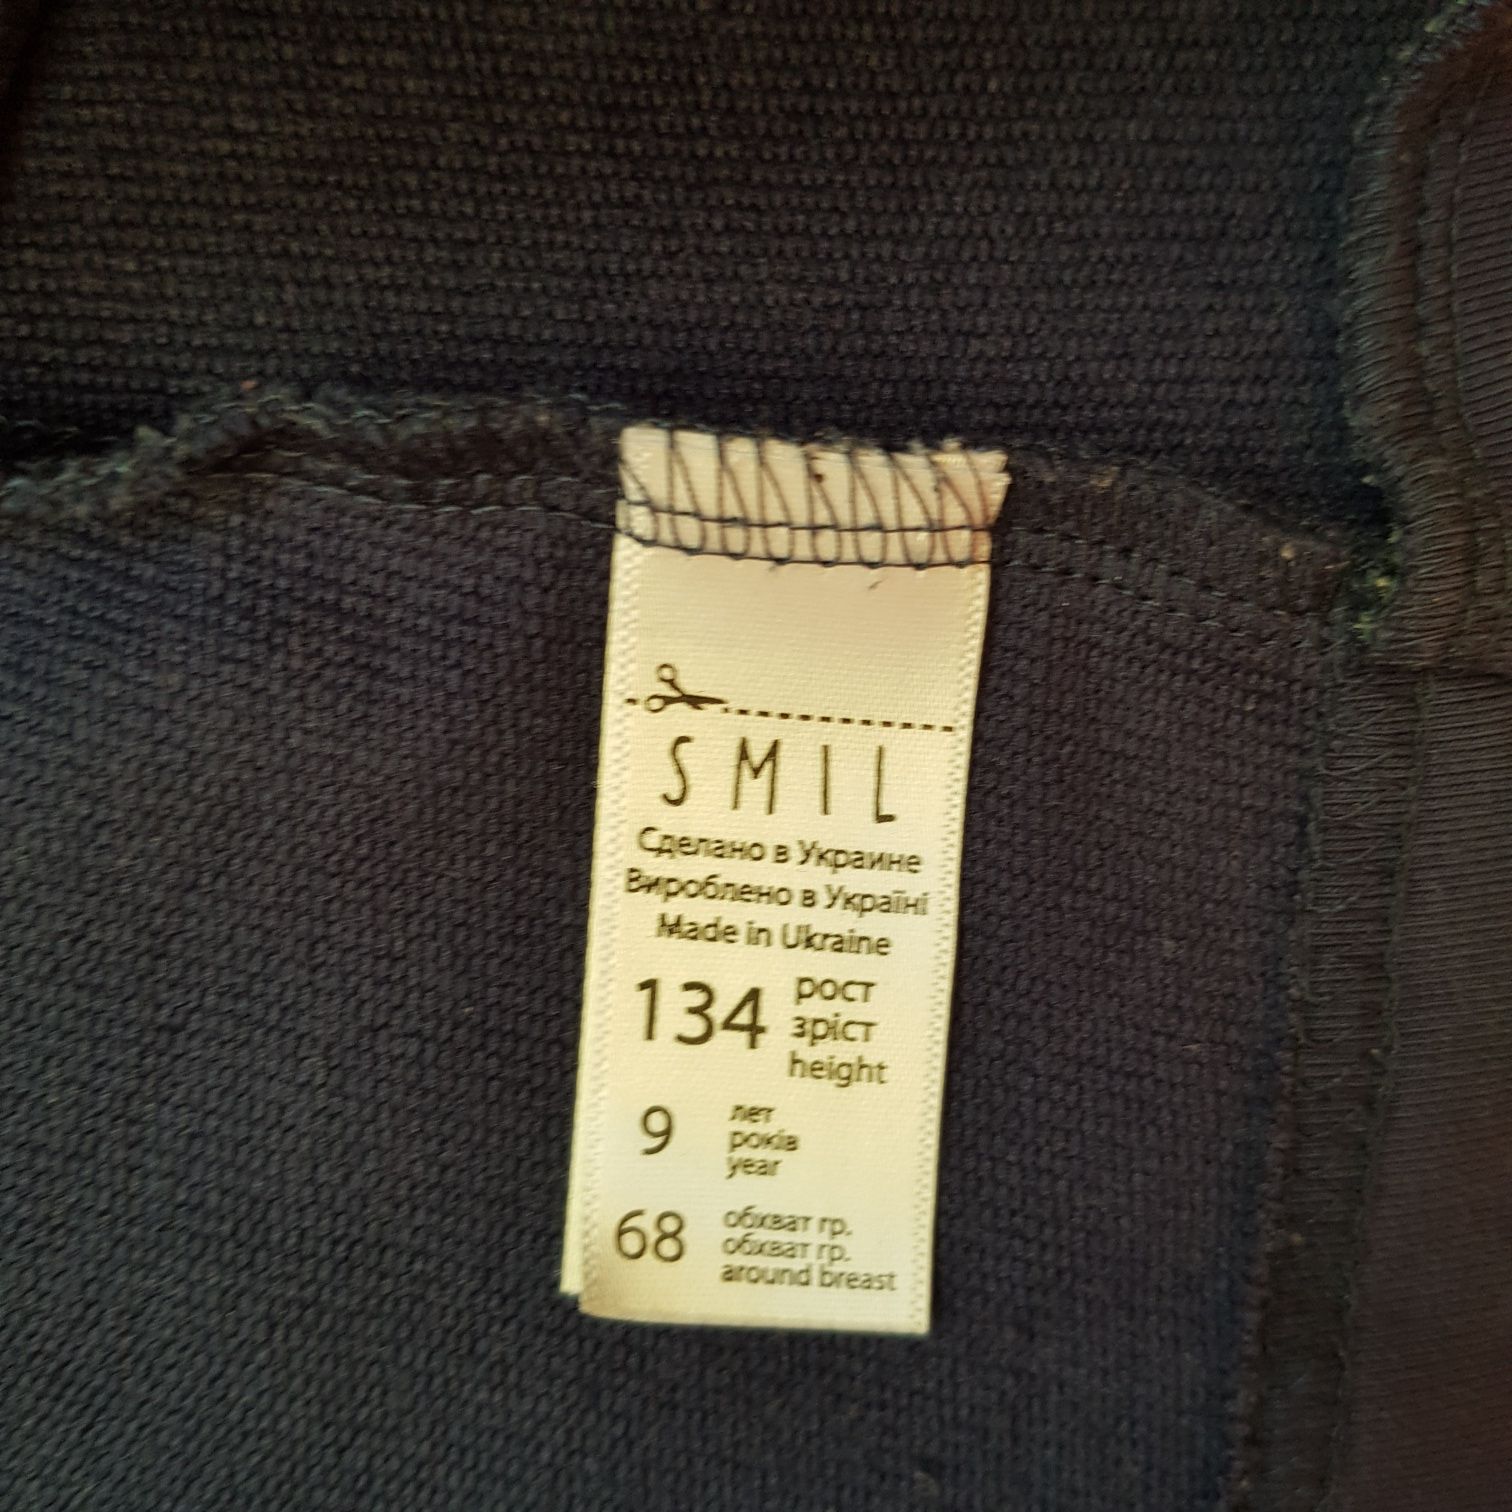 Пиджак для девочки Smil